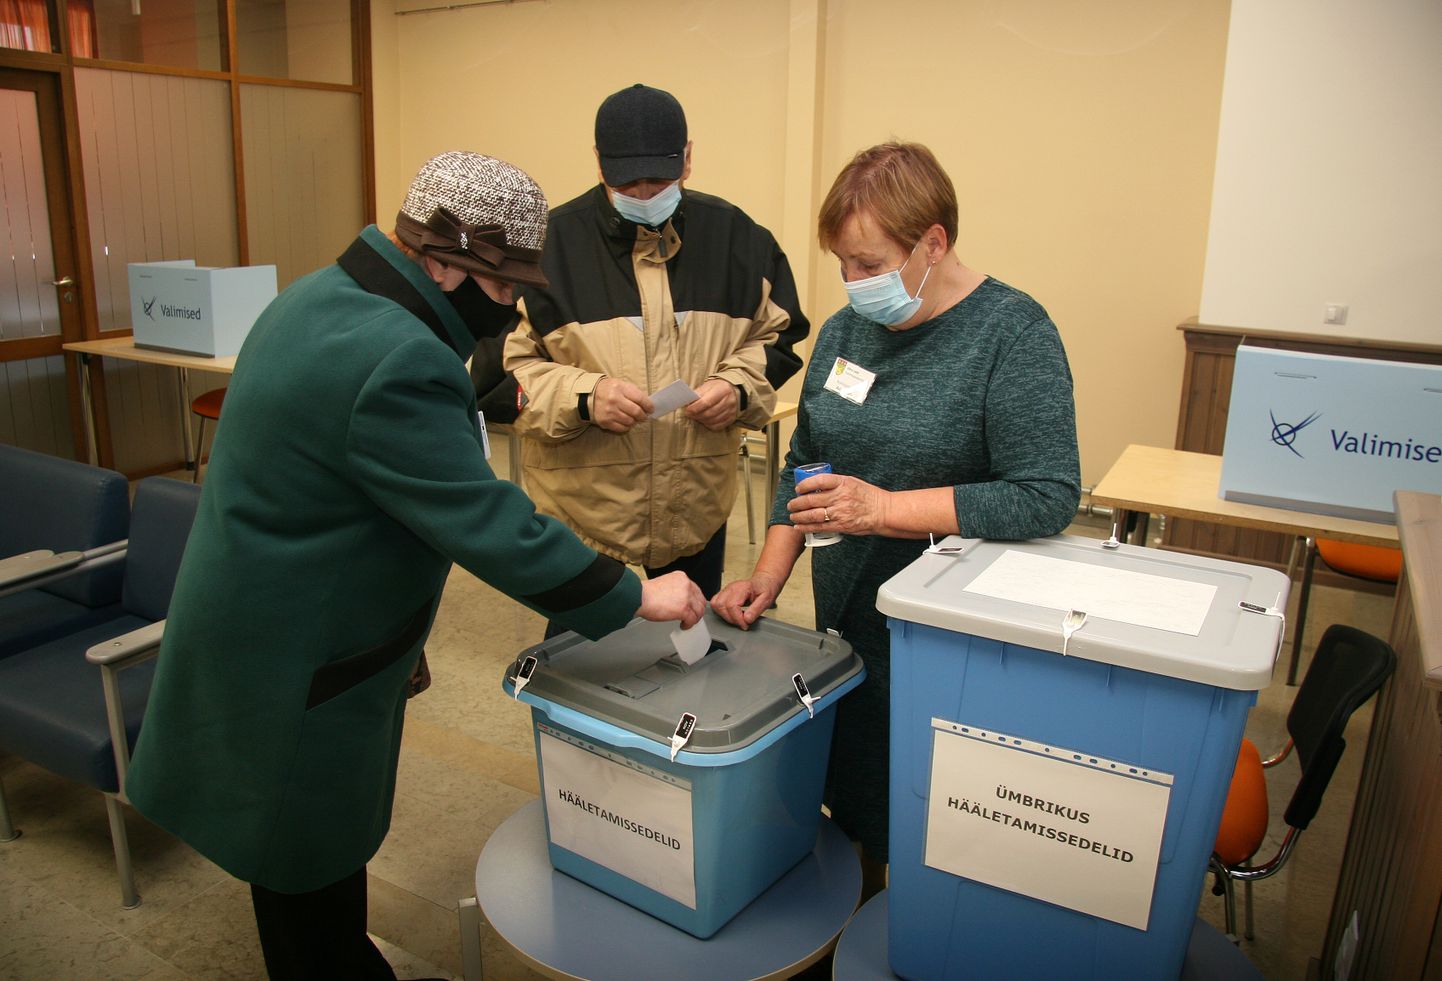 На снимке: ппредварительное голосование проходит на избирательном участке, расположенном в здании волостной управы Йыхви.